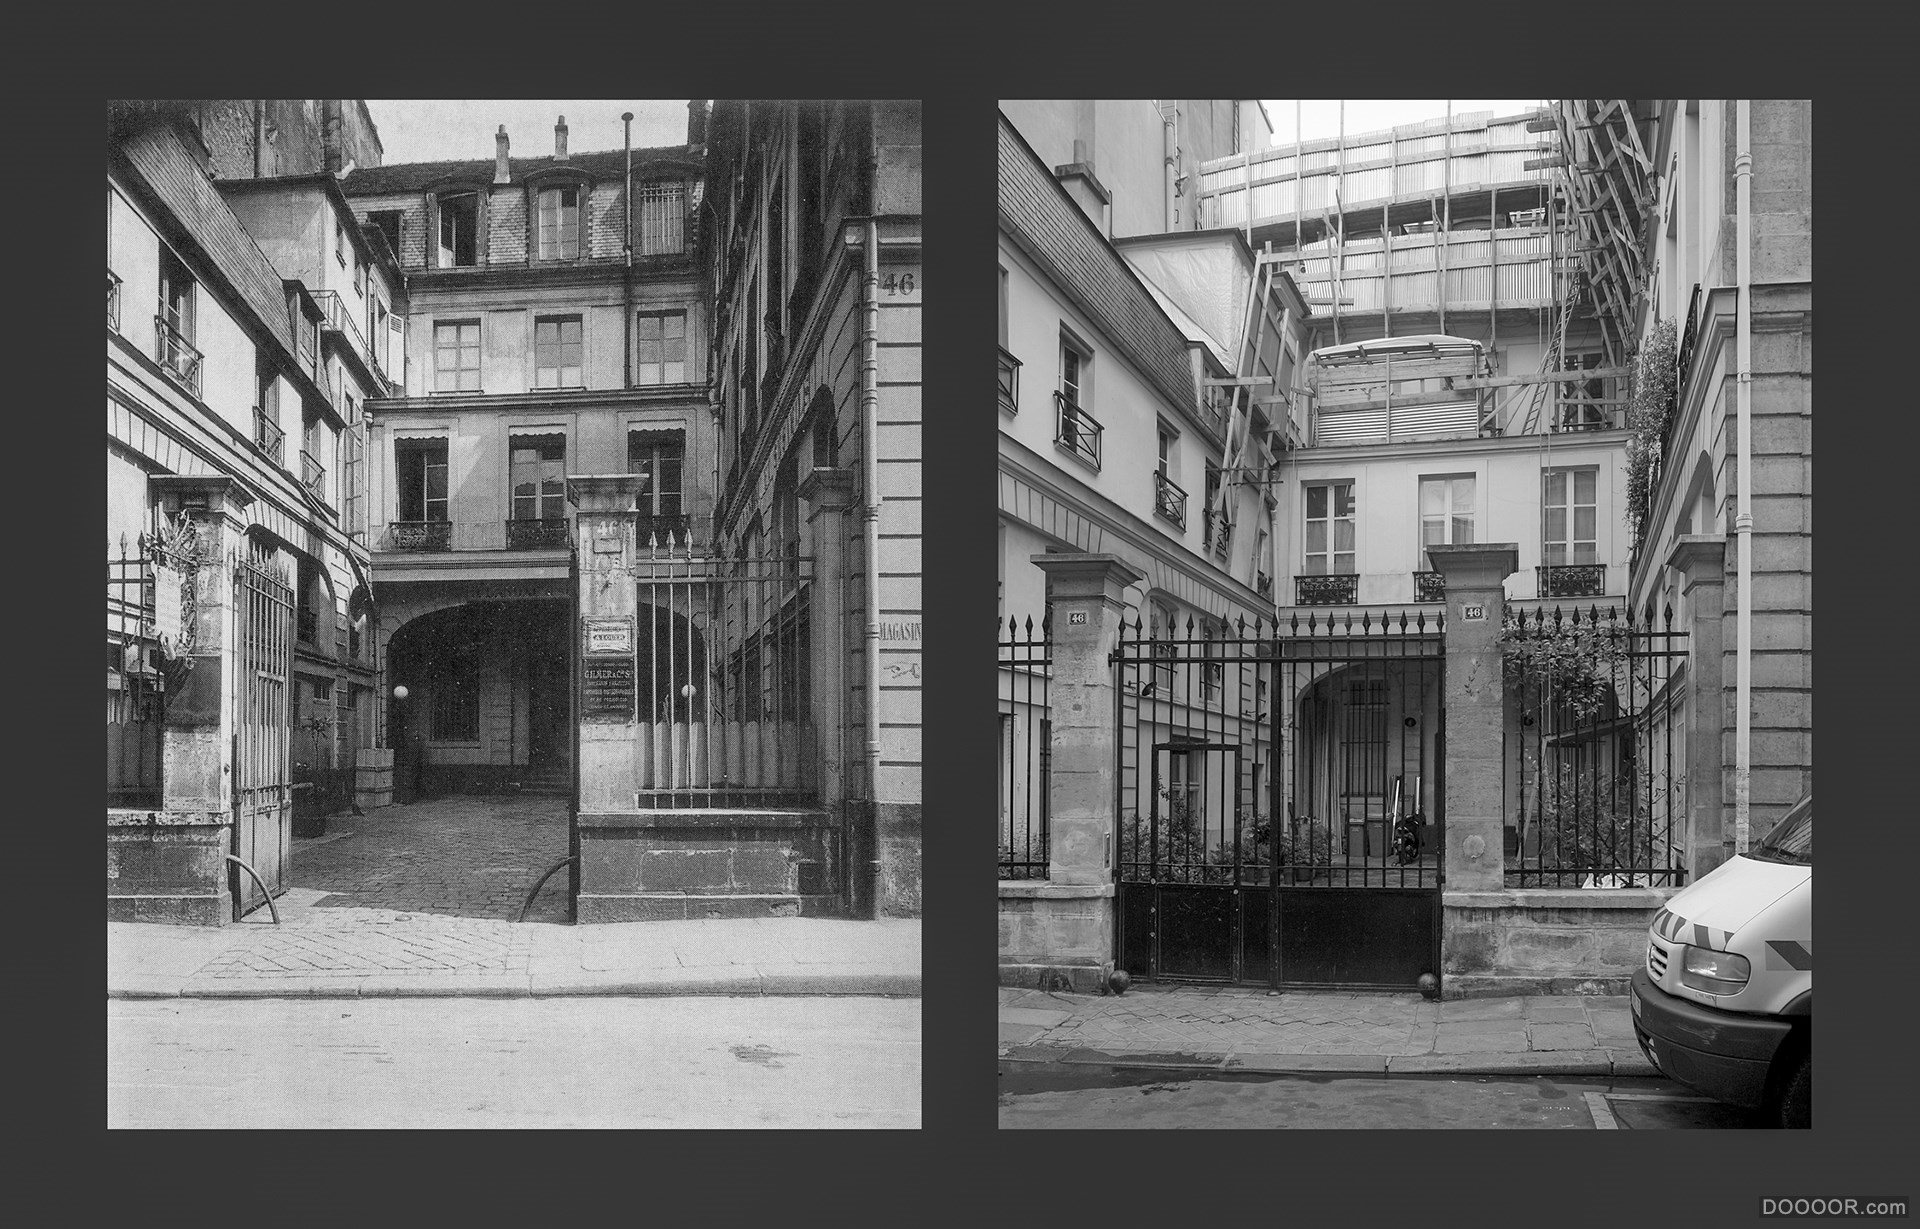 过去与现在-巴黎街头照片对比 [50P] (34).jpg